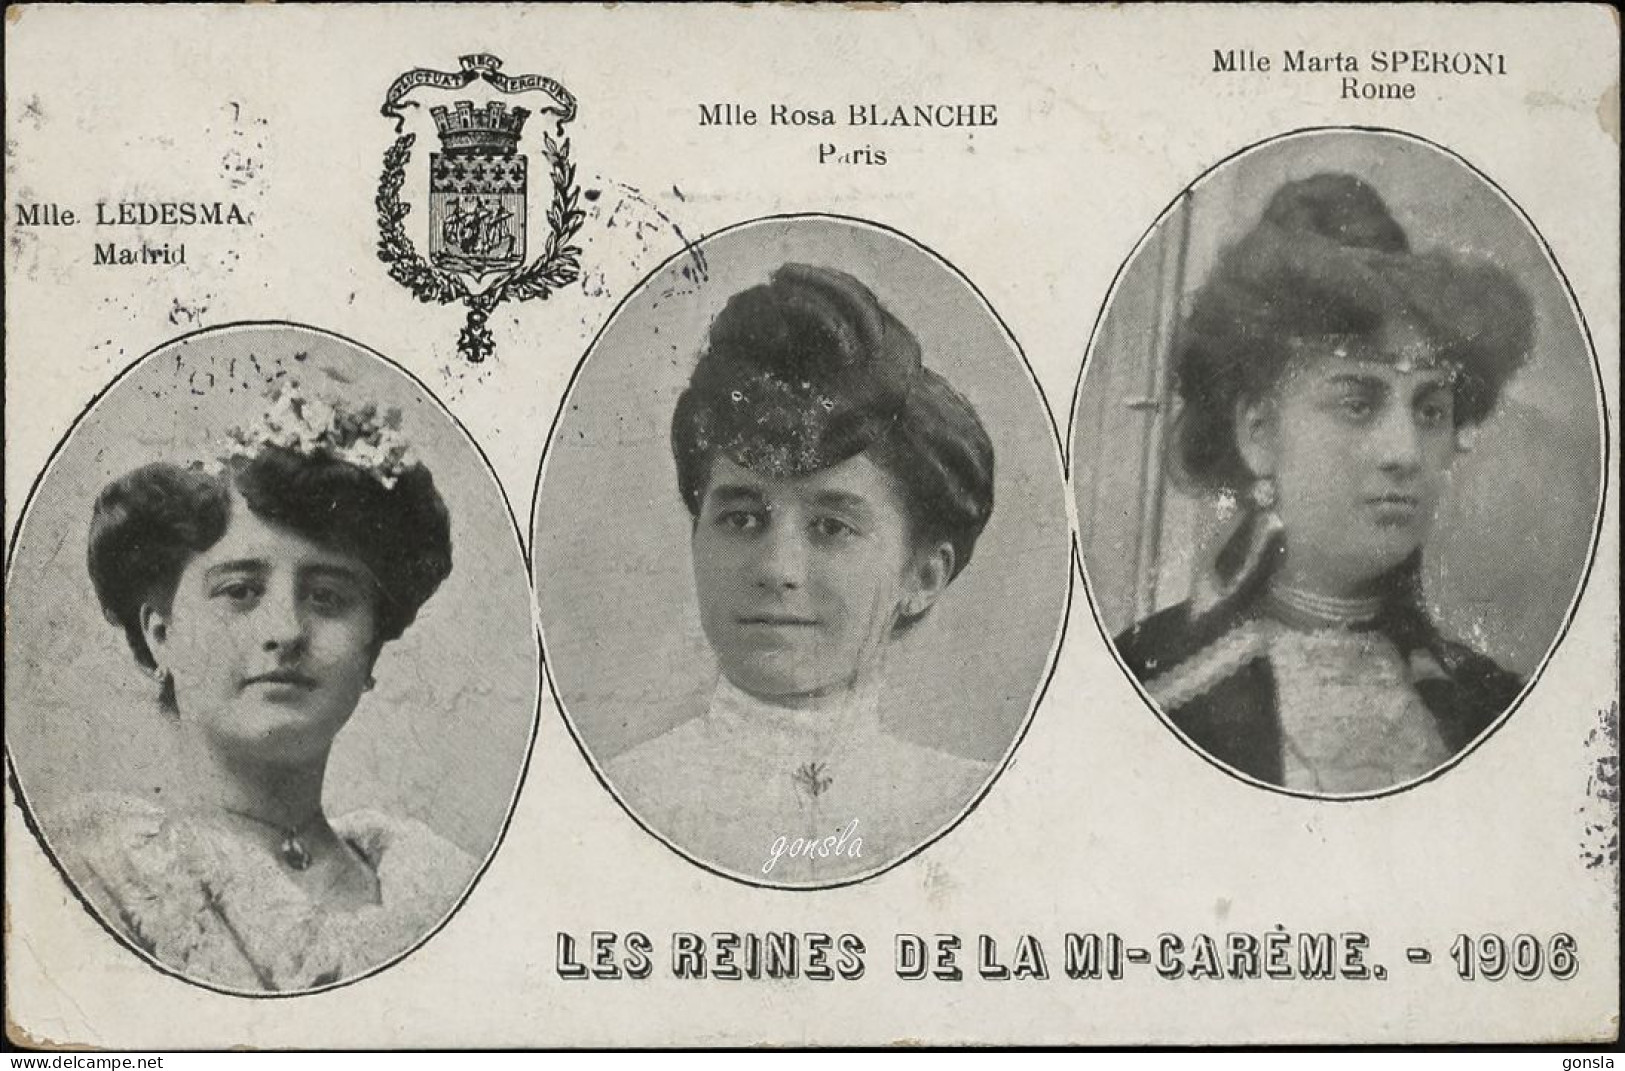 LES REINES DE LA MI-CARÈME 1906 "Mlle Ledesma/Madrid - Mlle Rosa Blanche/Paris - Mlle Marta Speroni/Rome" - Royal Families